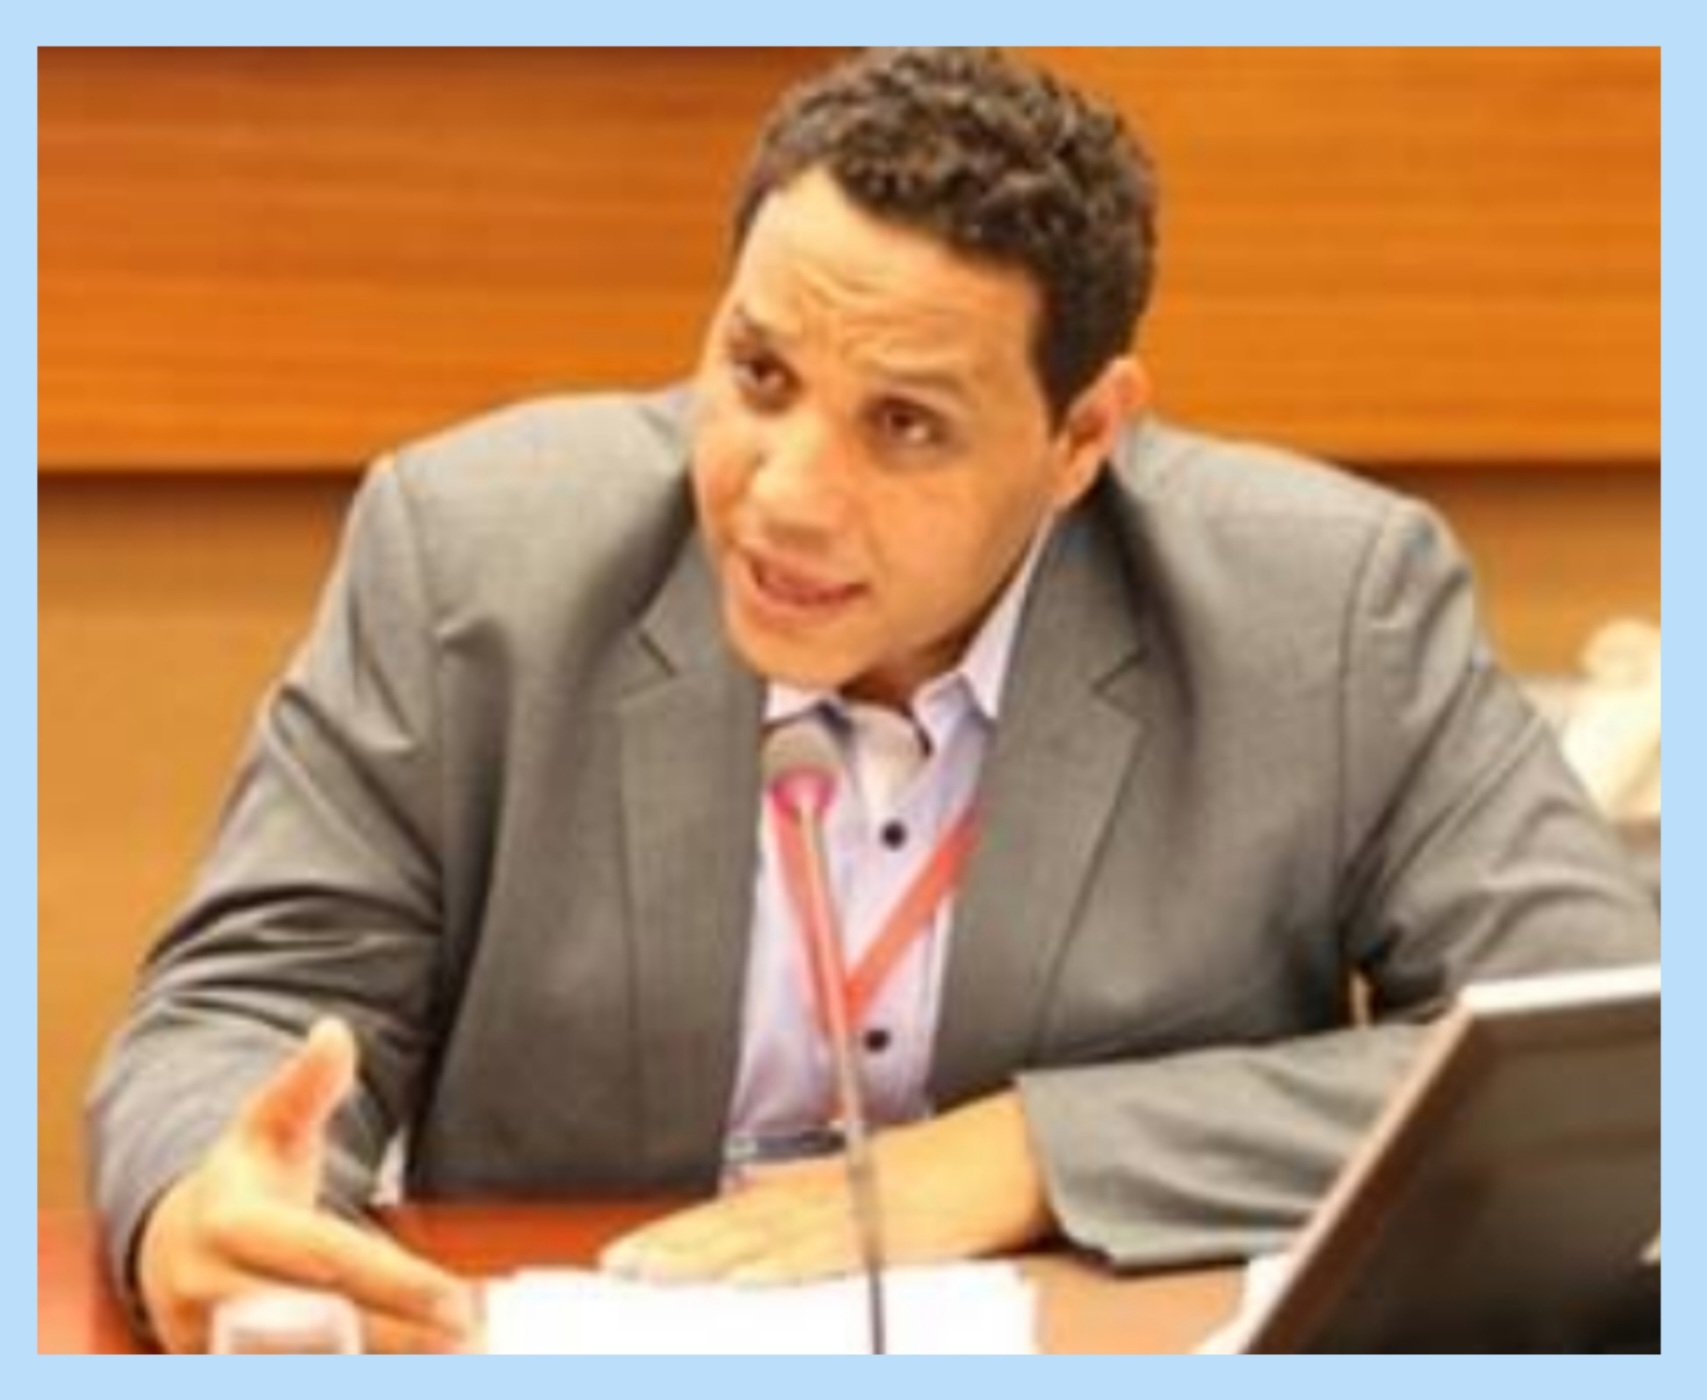  Le Conseil National des Droits de l'homme (CNDH) n'a reçu aucune plainte concernant le défunt Dr. Ayman Hadhoud, selon les déclarations du chef du Mécanisme des plaintes du CNDH. 